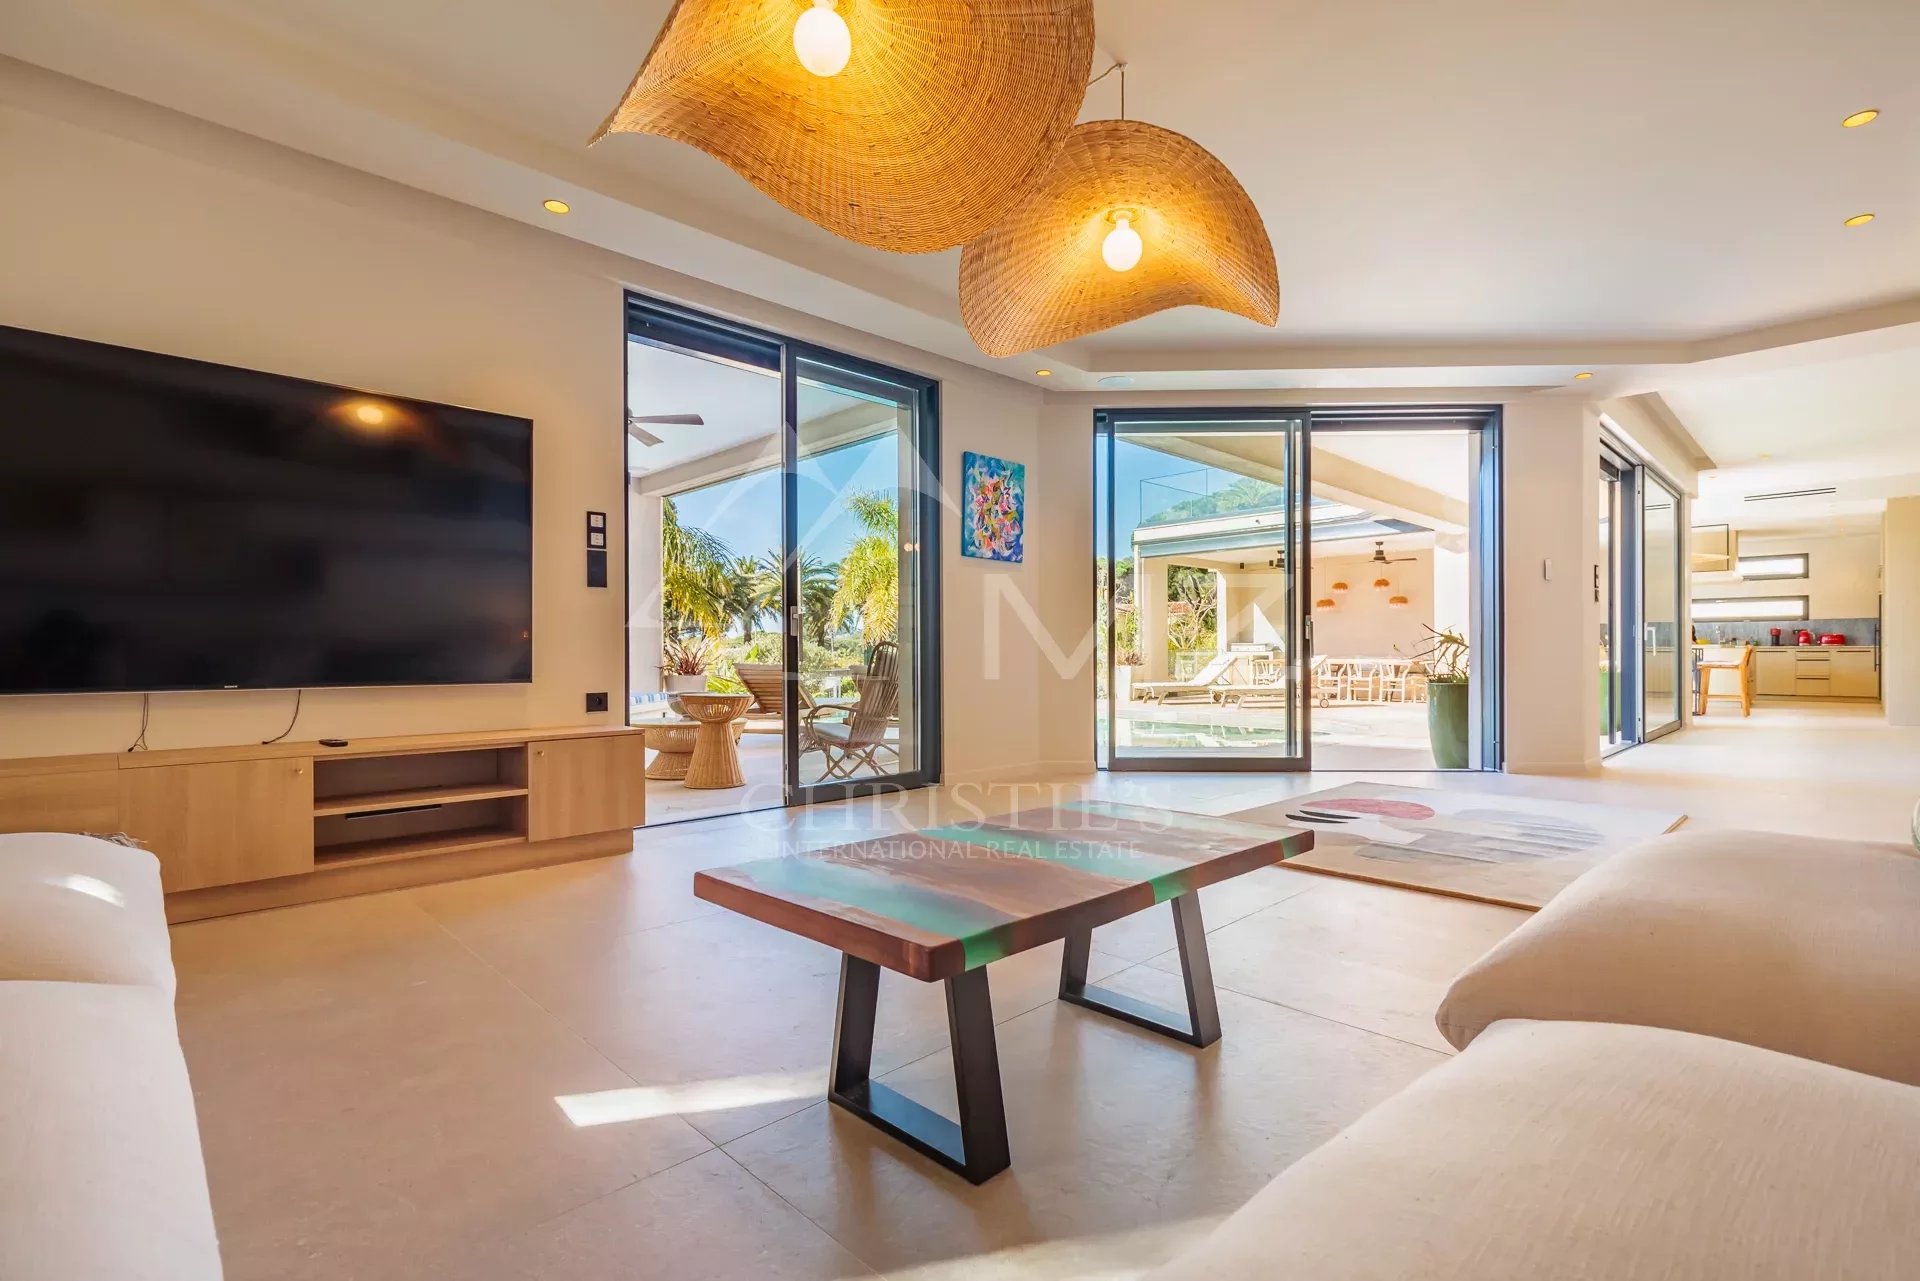 Wunderschöne moderne Villa mit hohem Standard - Strand zu Fuß erreichbar